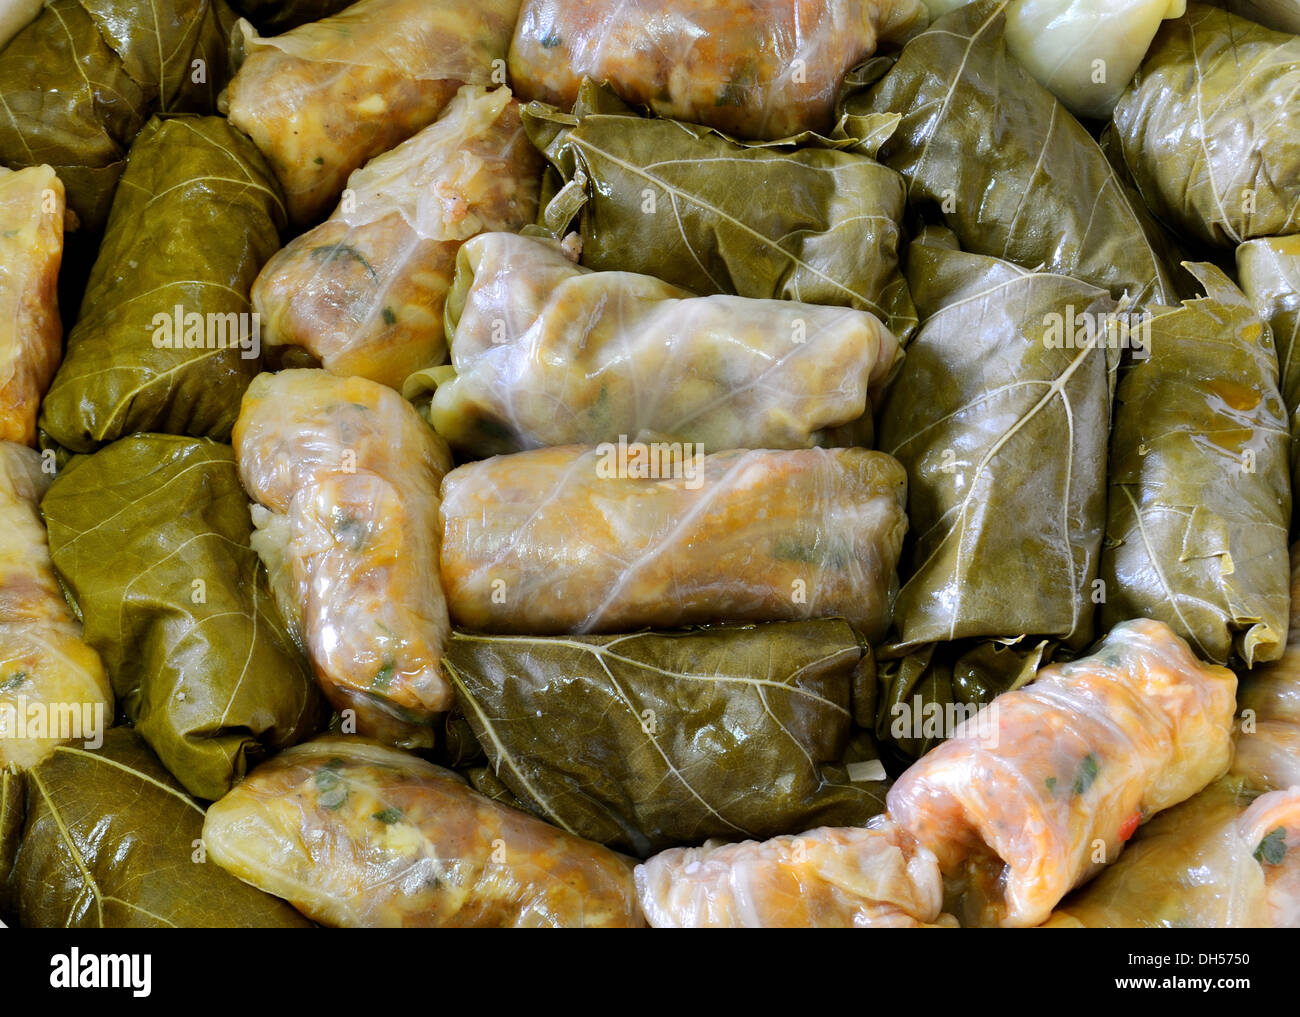 Sarmale, stuffed cabbage, Romanian cuisine Stock Photo